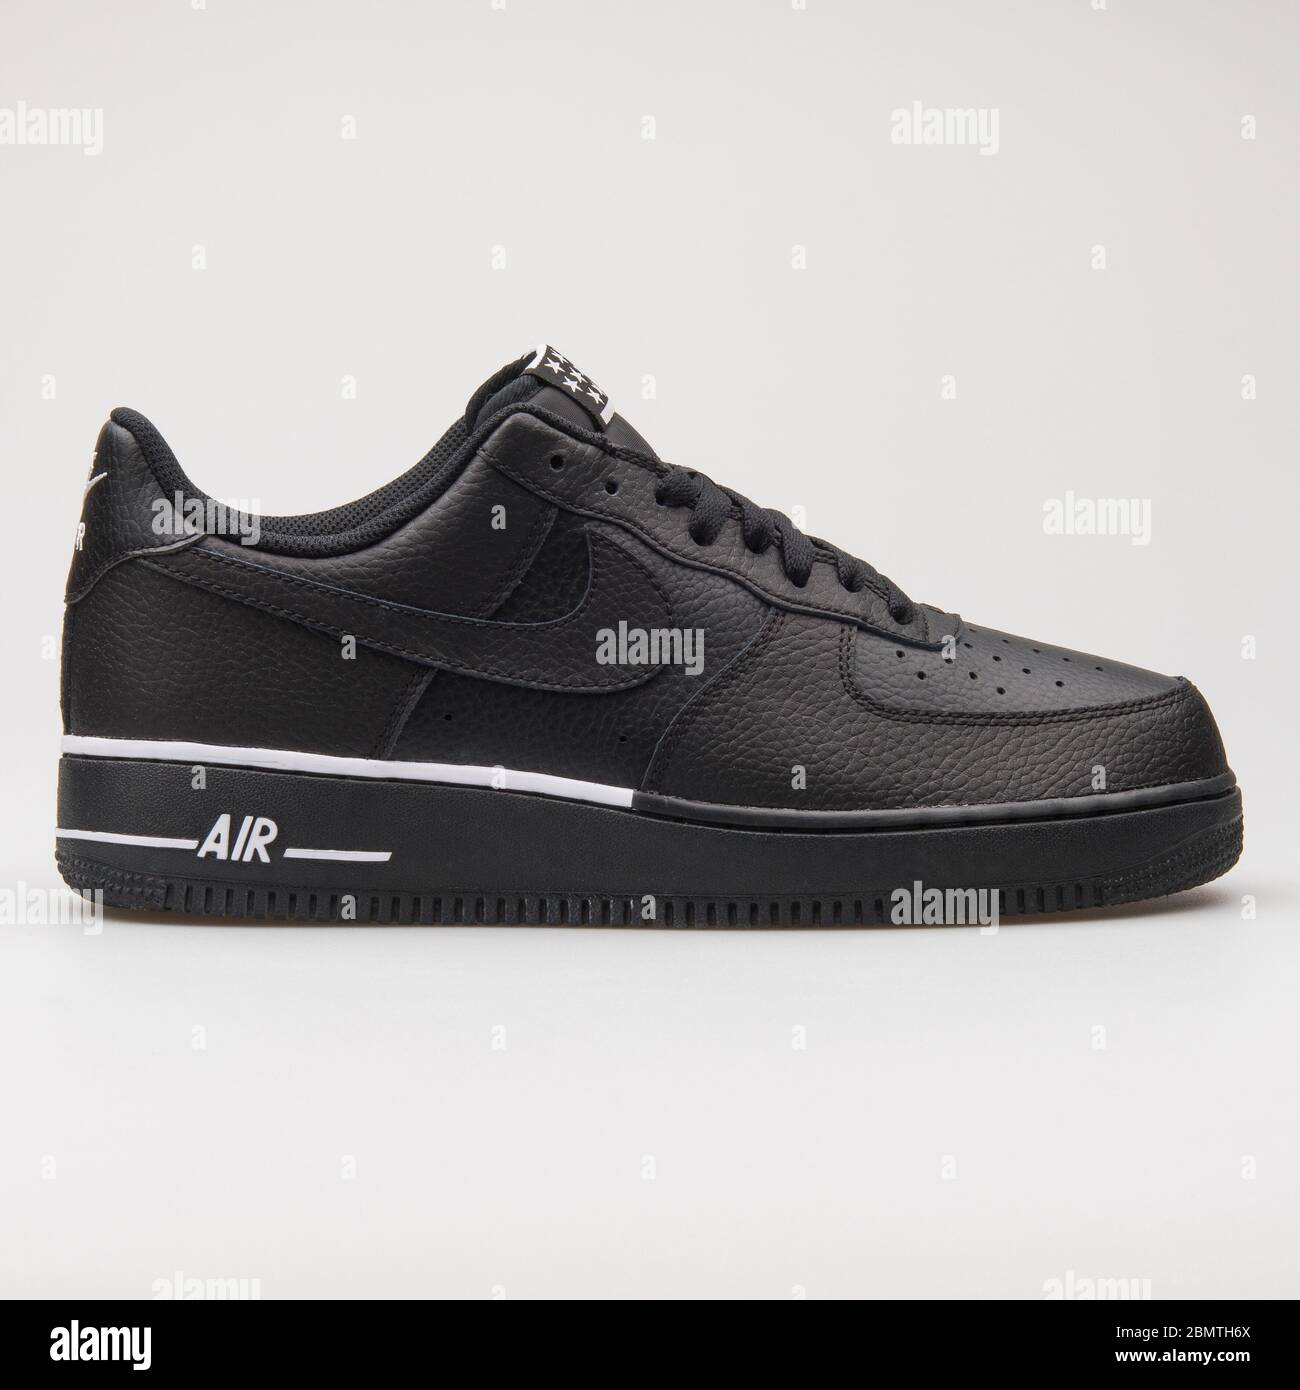 VIENNE, AUTRICHE - 12 JANVIER 2018 : sneaker Nike Air Force 1 07 noir et  blanc sur fond blanc Photo Stock - Alamy